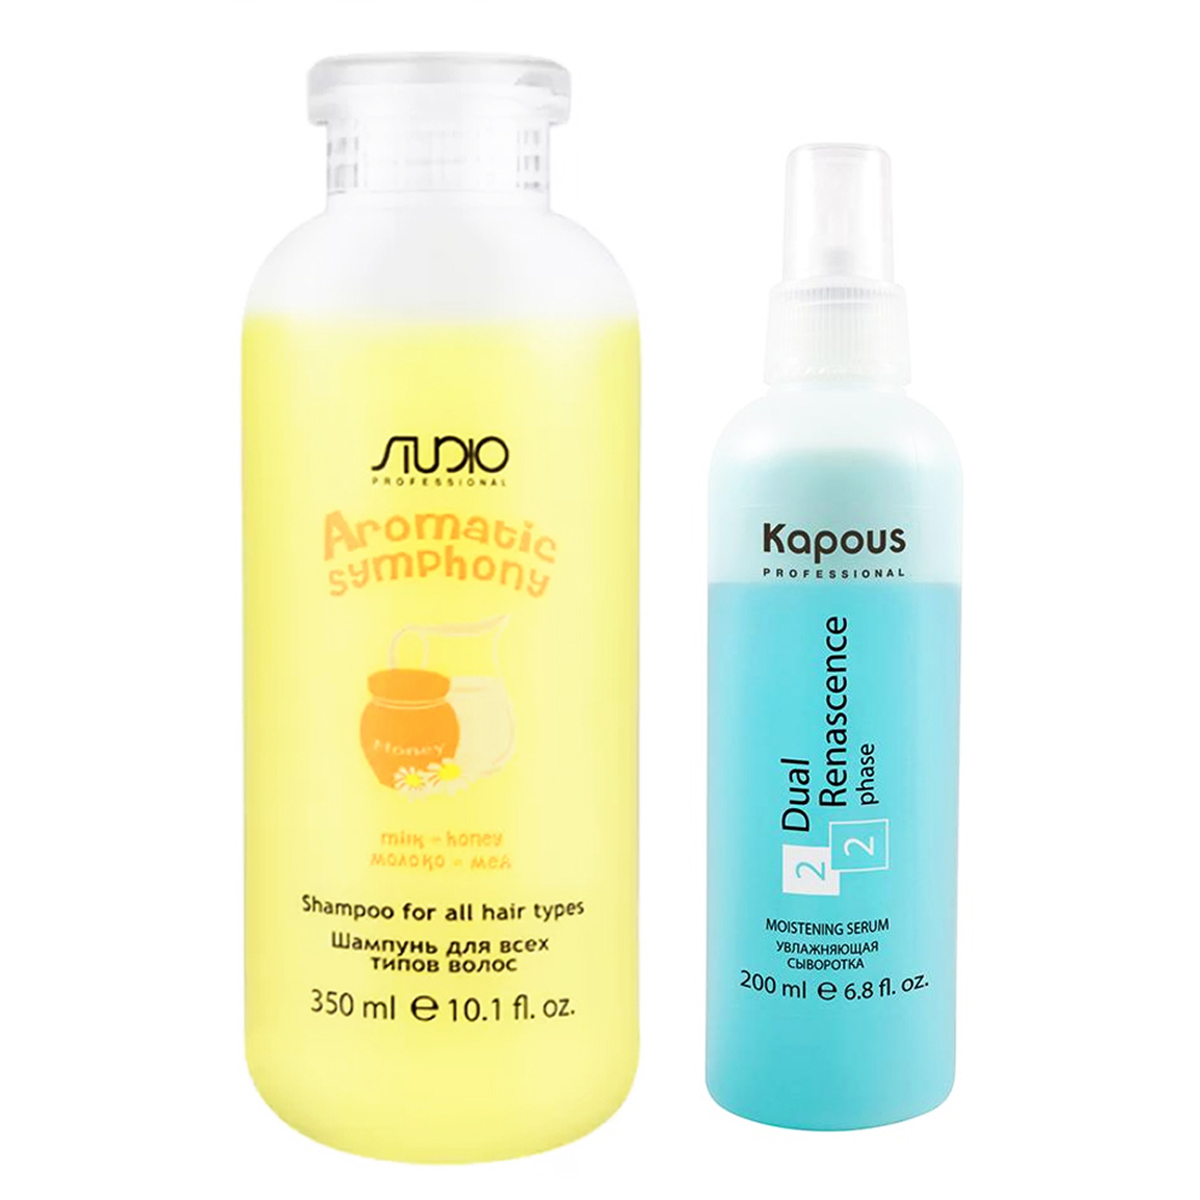 Kapous Professional Набор для волос Молоко и мёд (шампунь 